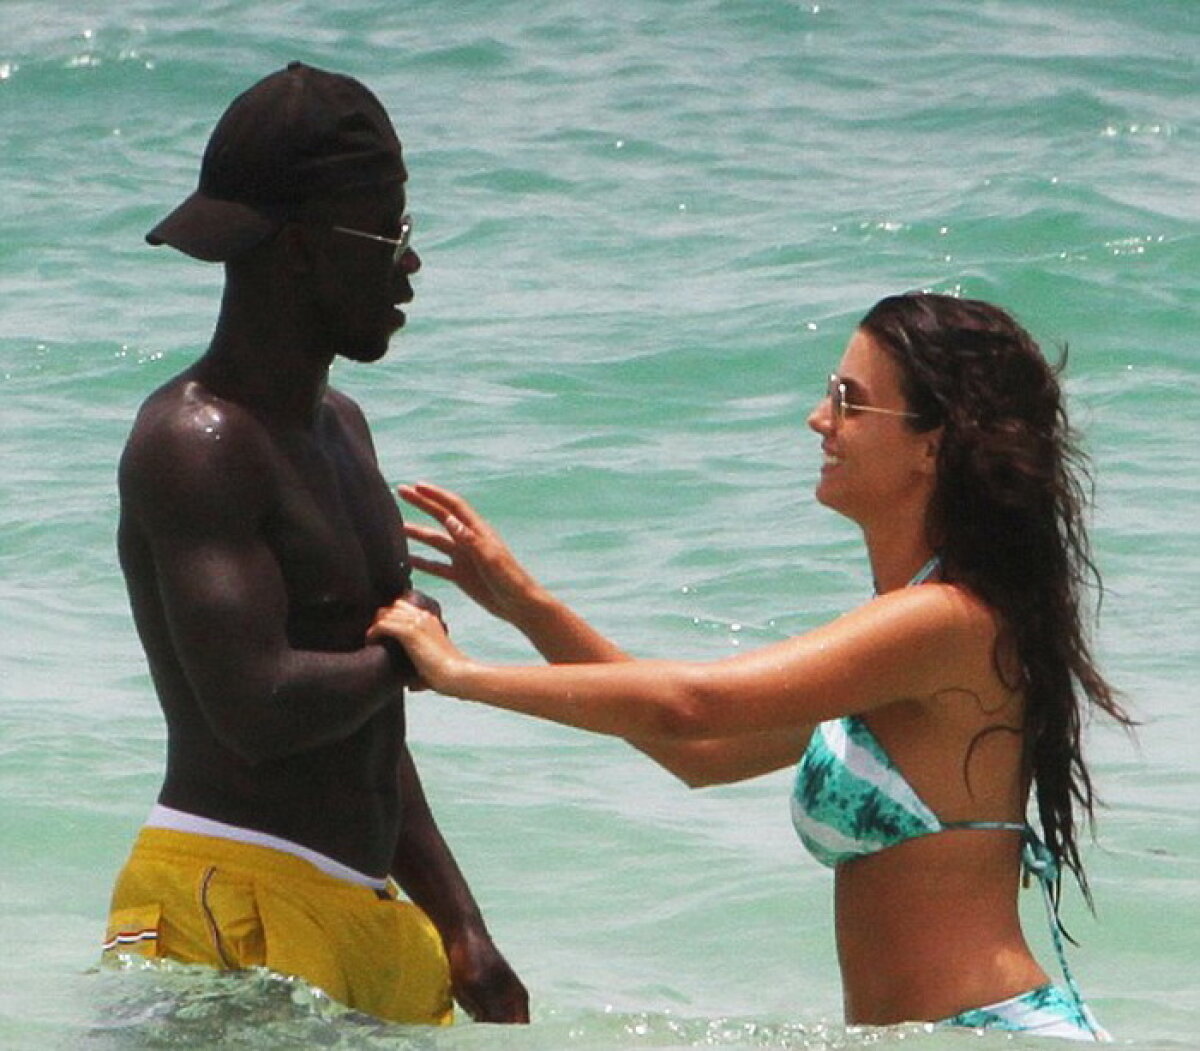 Scene fierbinți pe plajă! Un fotbalist și iubita s-au abținut cu greu de la prostii